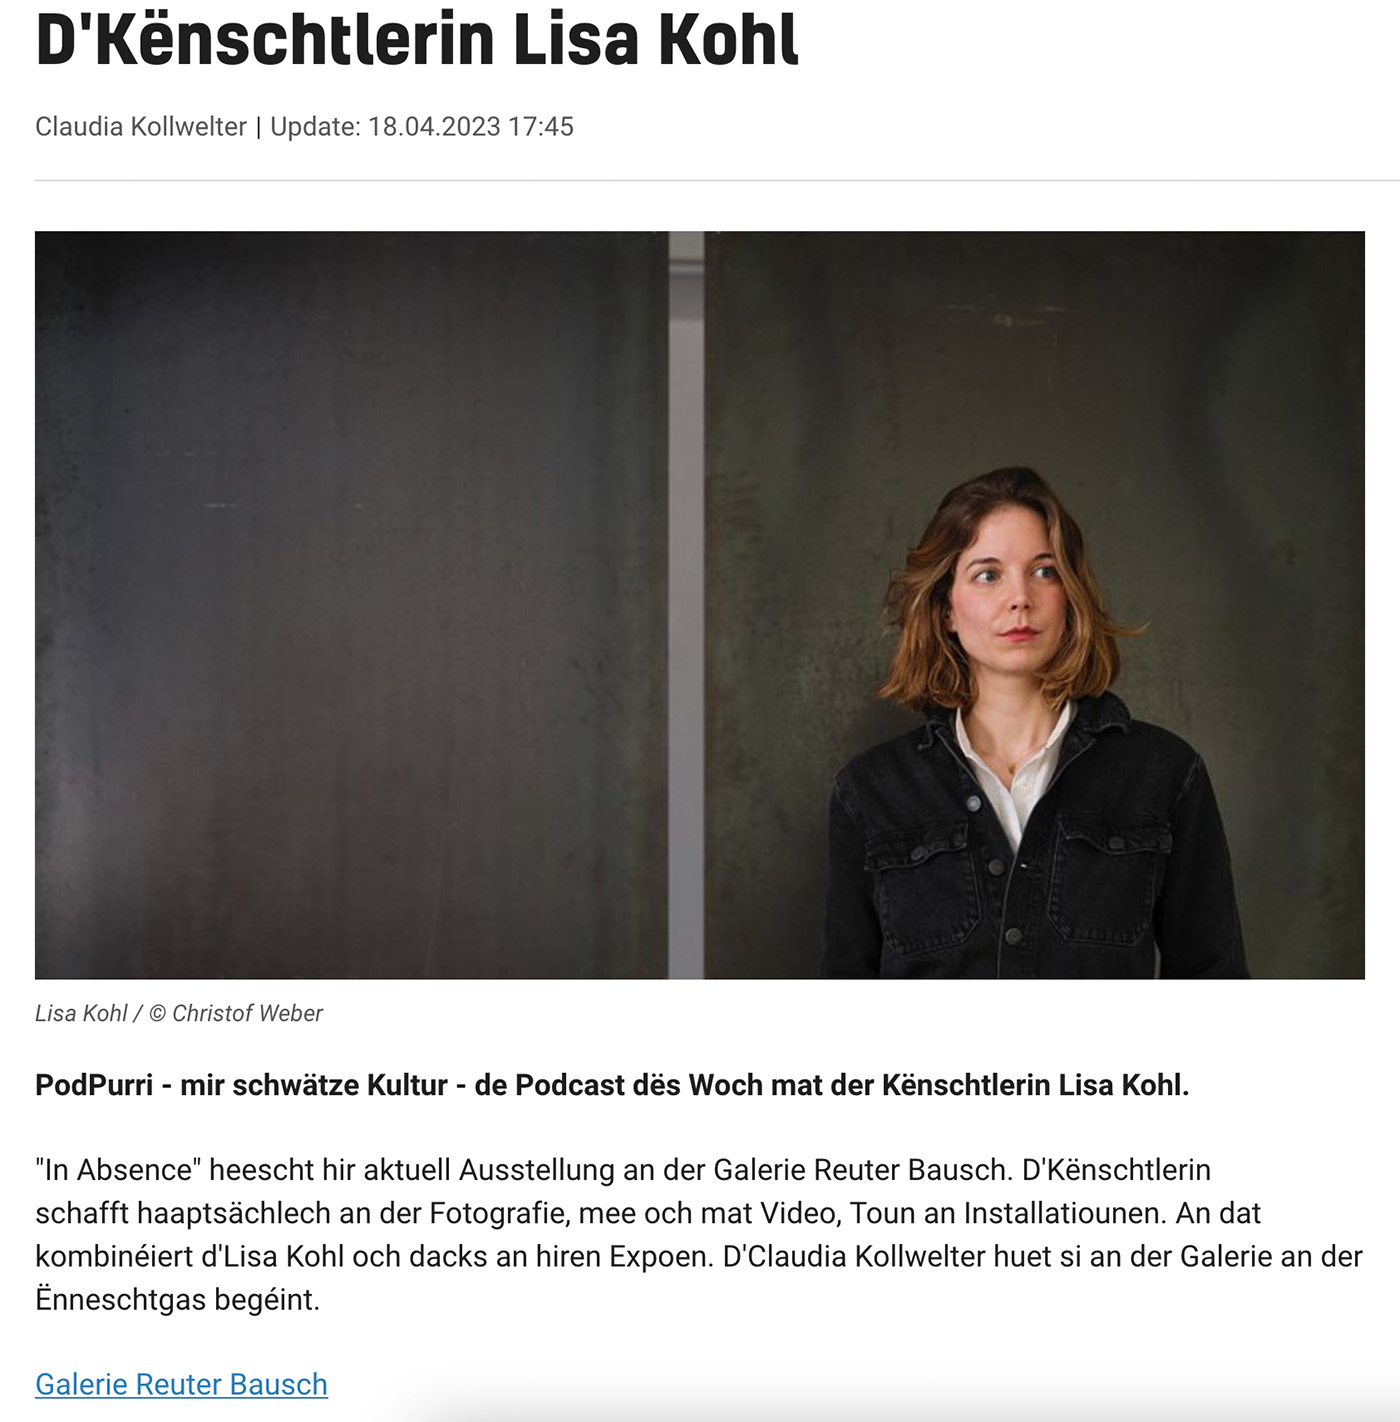 News of Reuter Bausch Art Gallery PodPurri - mir schwätze Kultur - de Podcast dës Woch mat der Kënschtlerin Lisa Kohl. 